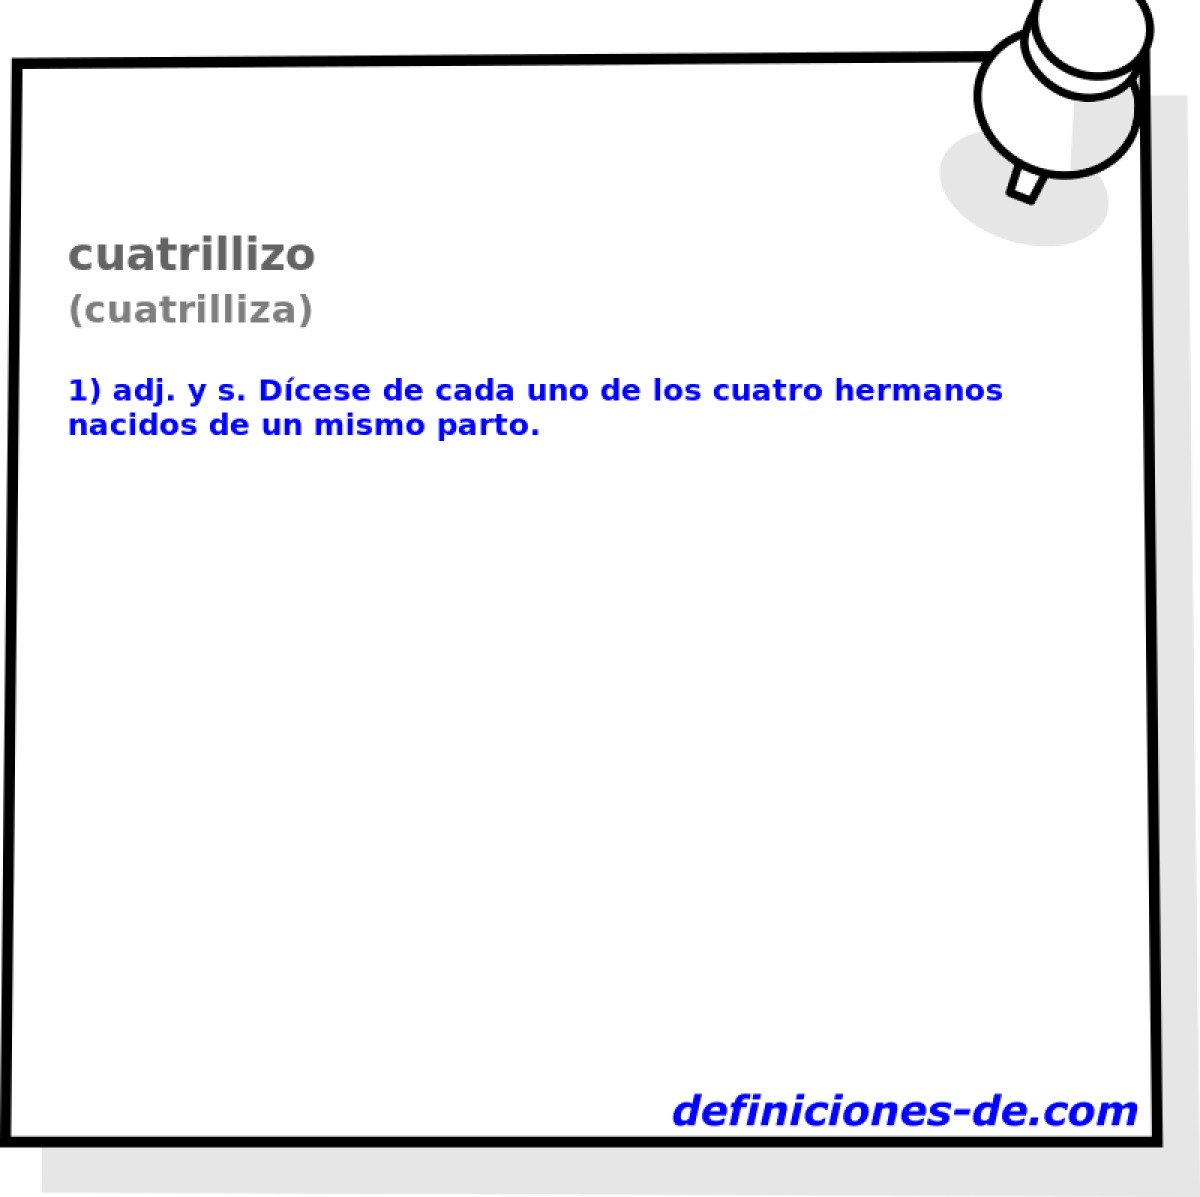 cuatrillizo (cuatrilliza)